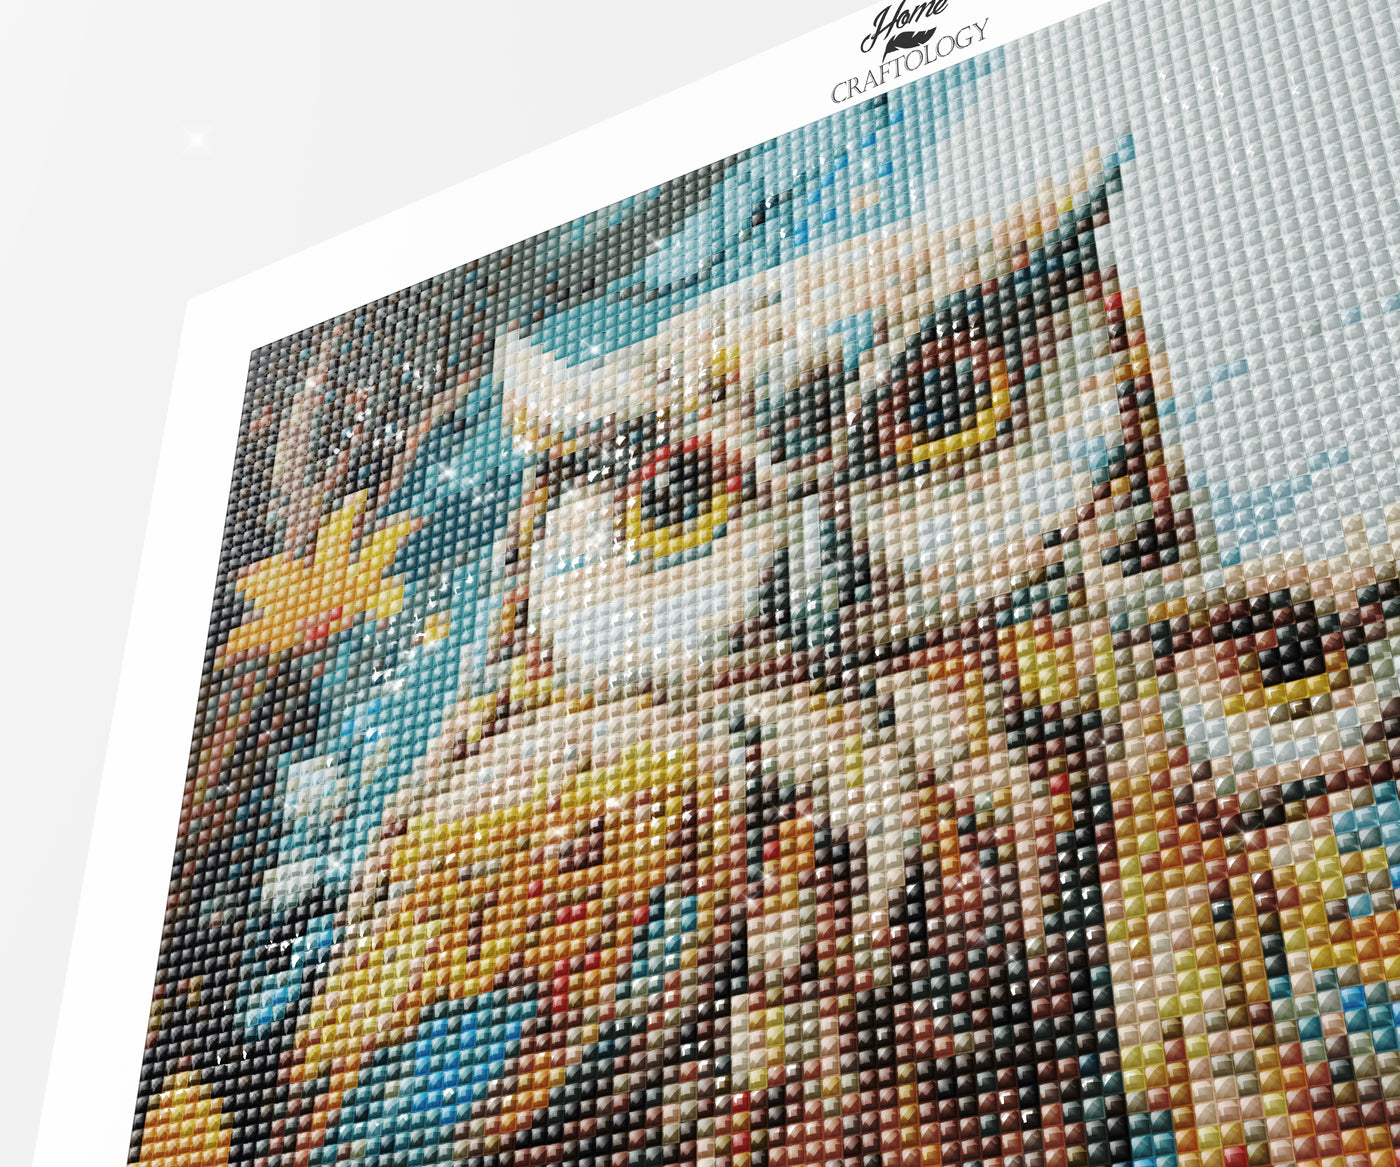 Owl Family - Premium Diamond Painting Kit